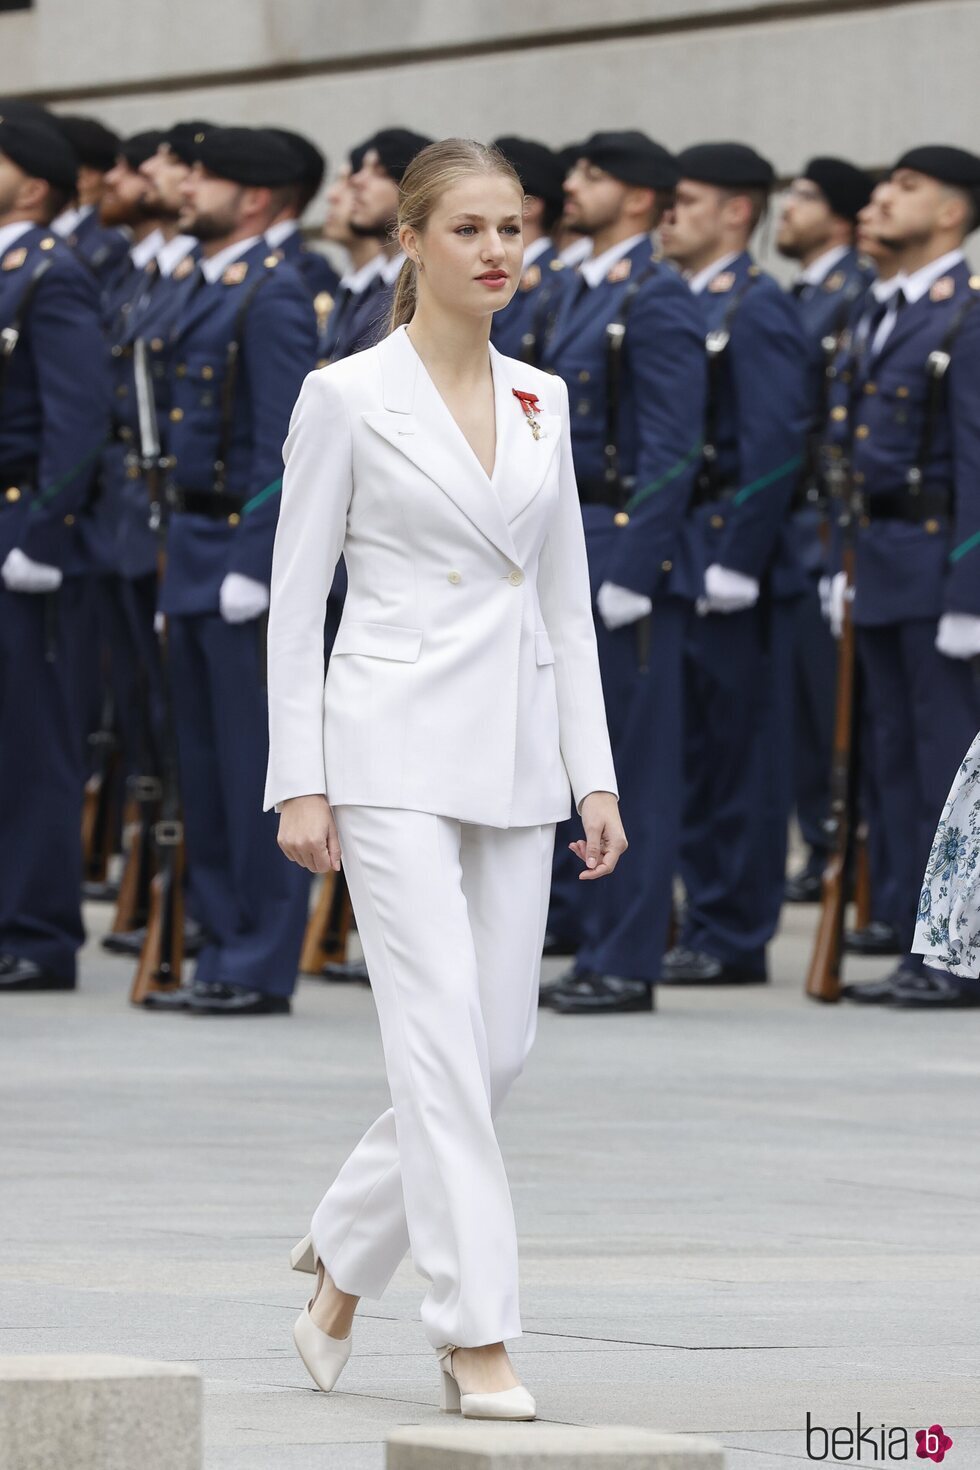 La Princesa Leonor con un traje blanco para la jura de la Constitución